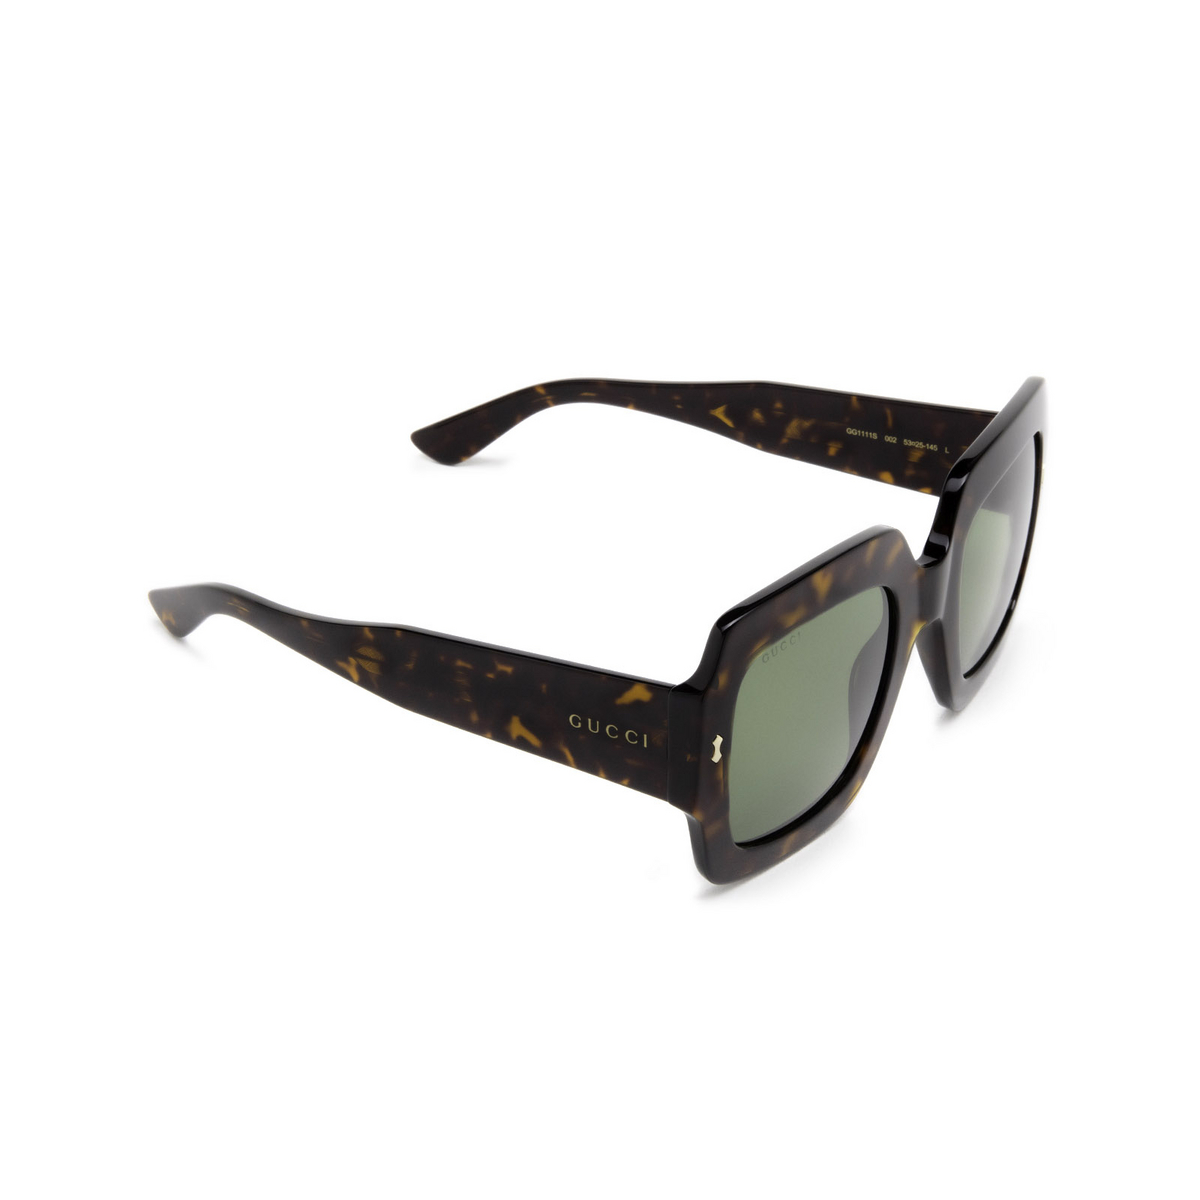 Gucci® Square Sunglasses: GG1111S color Havana 002 - three-quarters view.